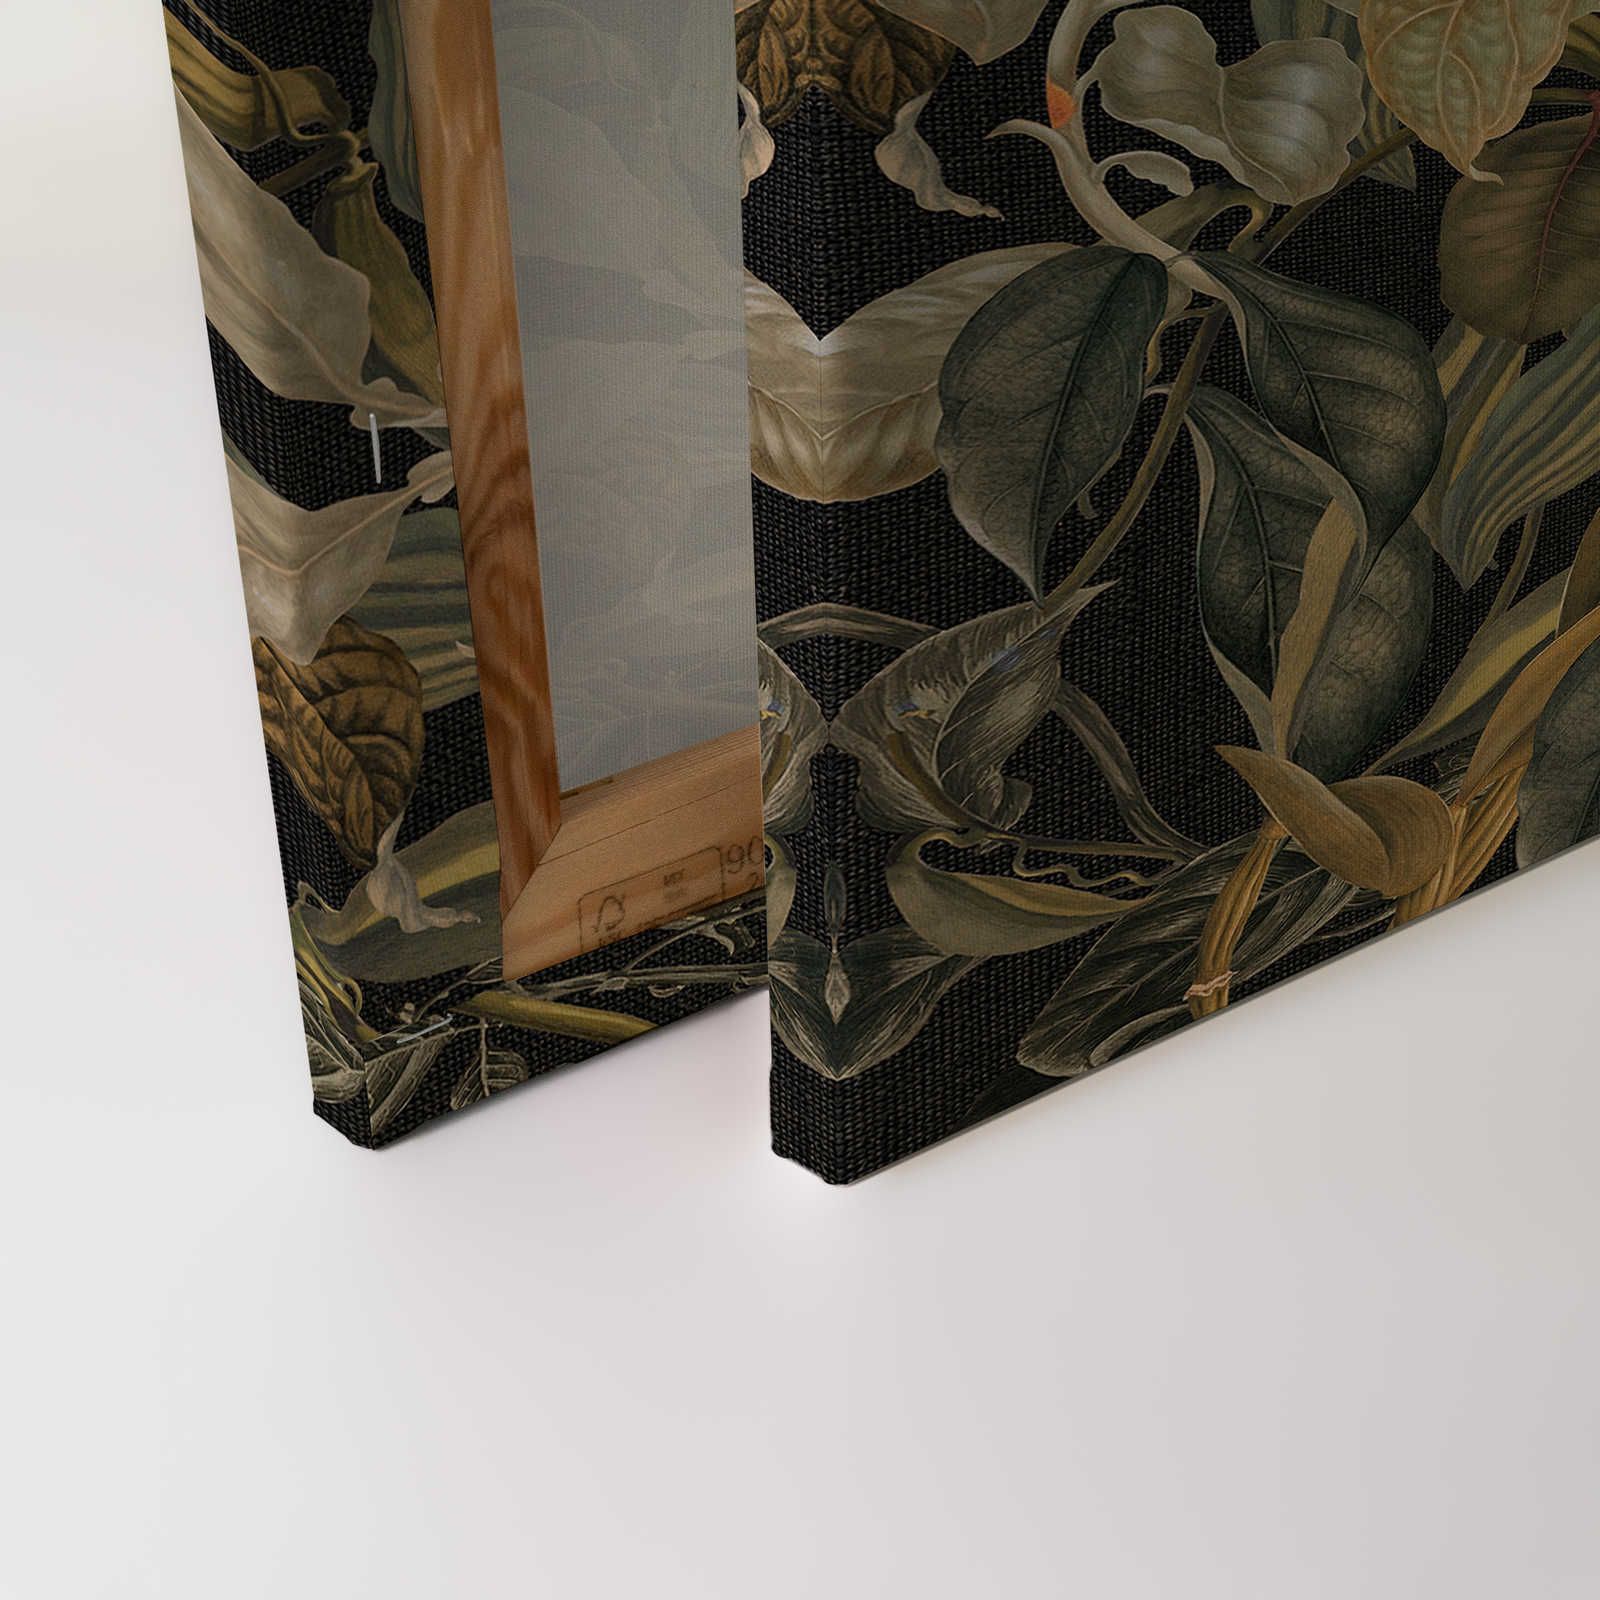             Botanical Leinwandbild mit Orchideen & Blätter-Motiv – 0,90 m x 0,60 m
        